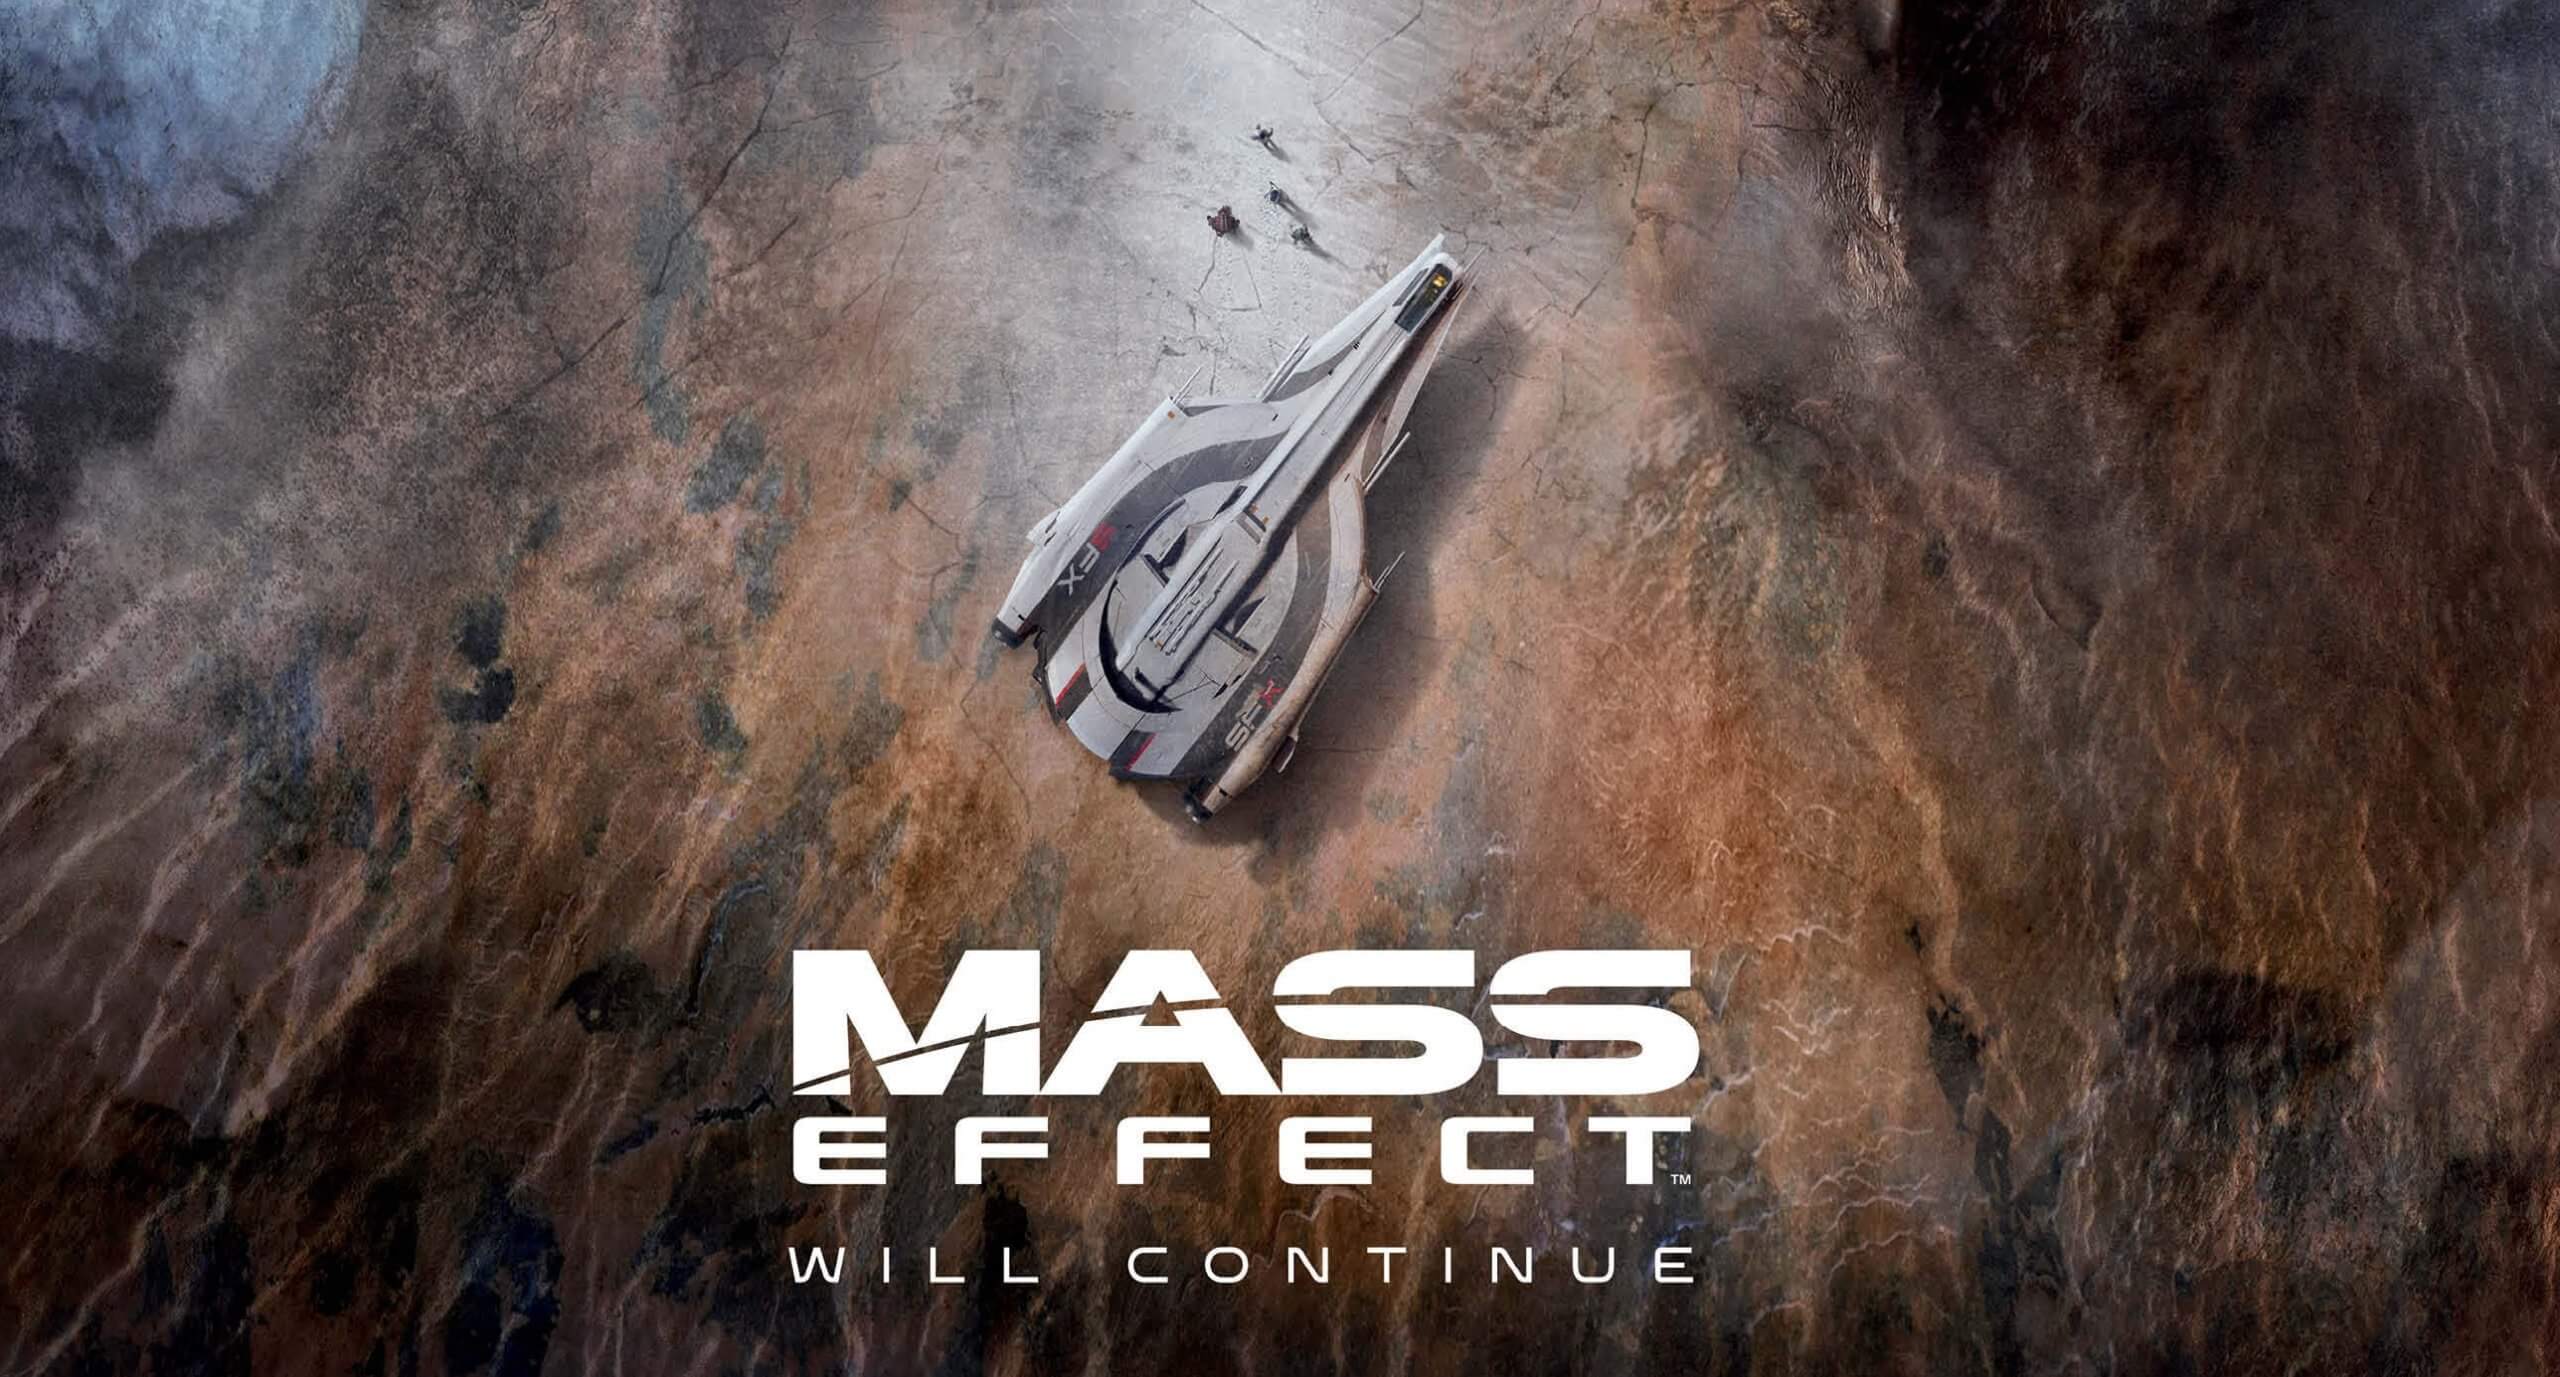 Mass Effect cumple 14 años y BioWare nos comparte una imagen del futuro de la saga